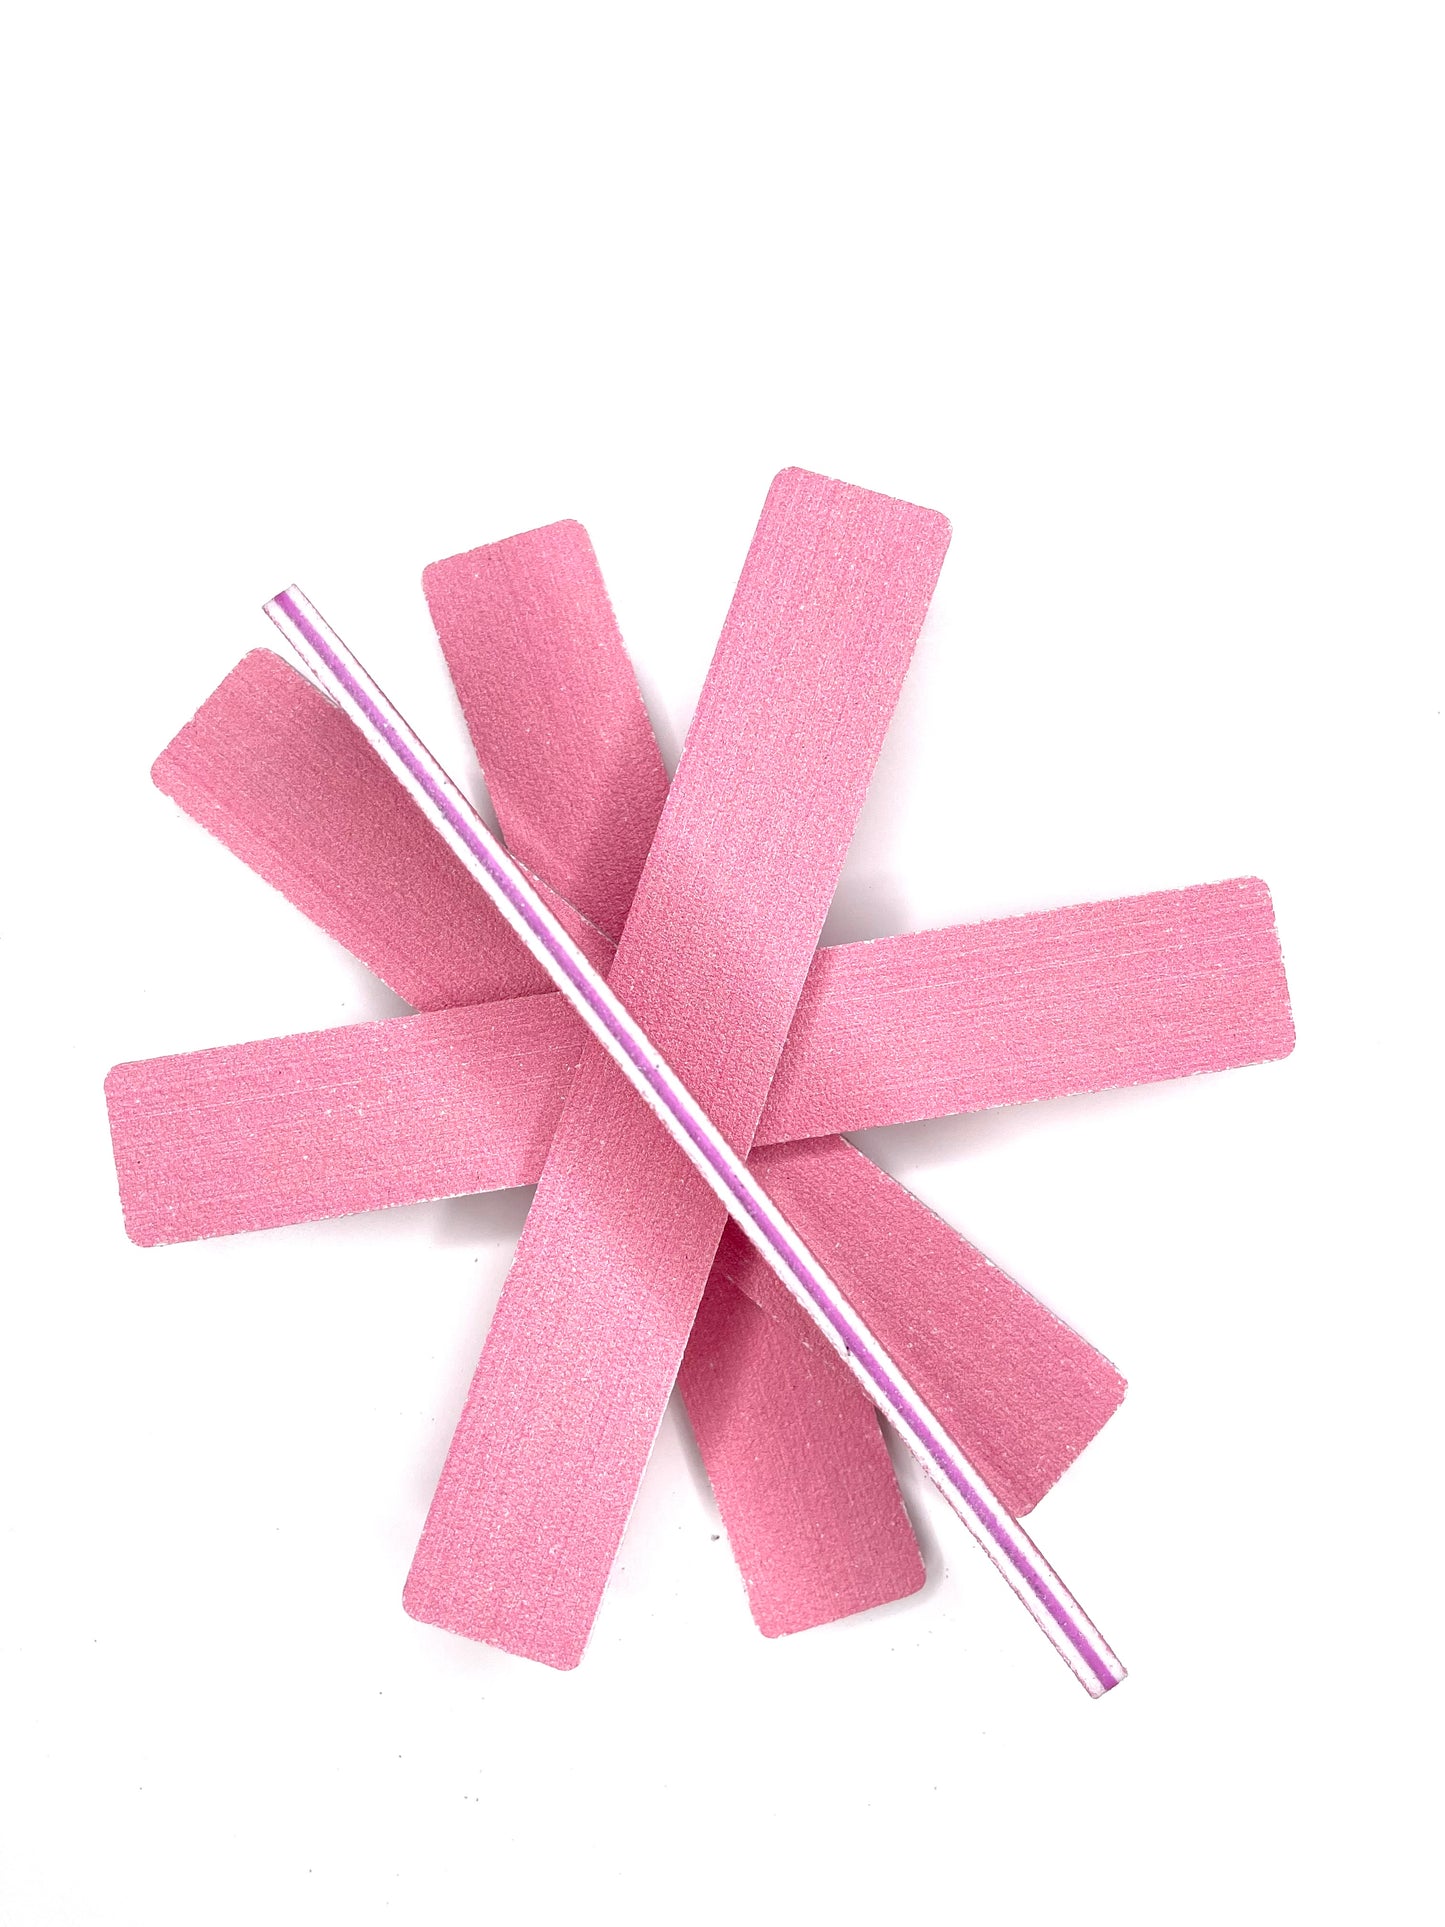 Pink Nail Files